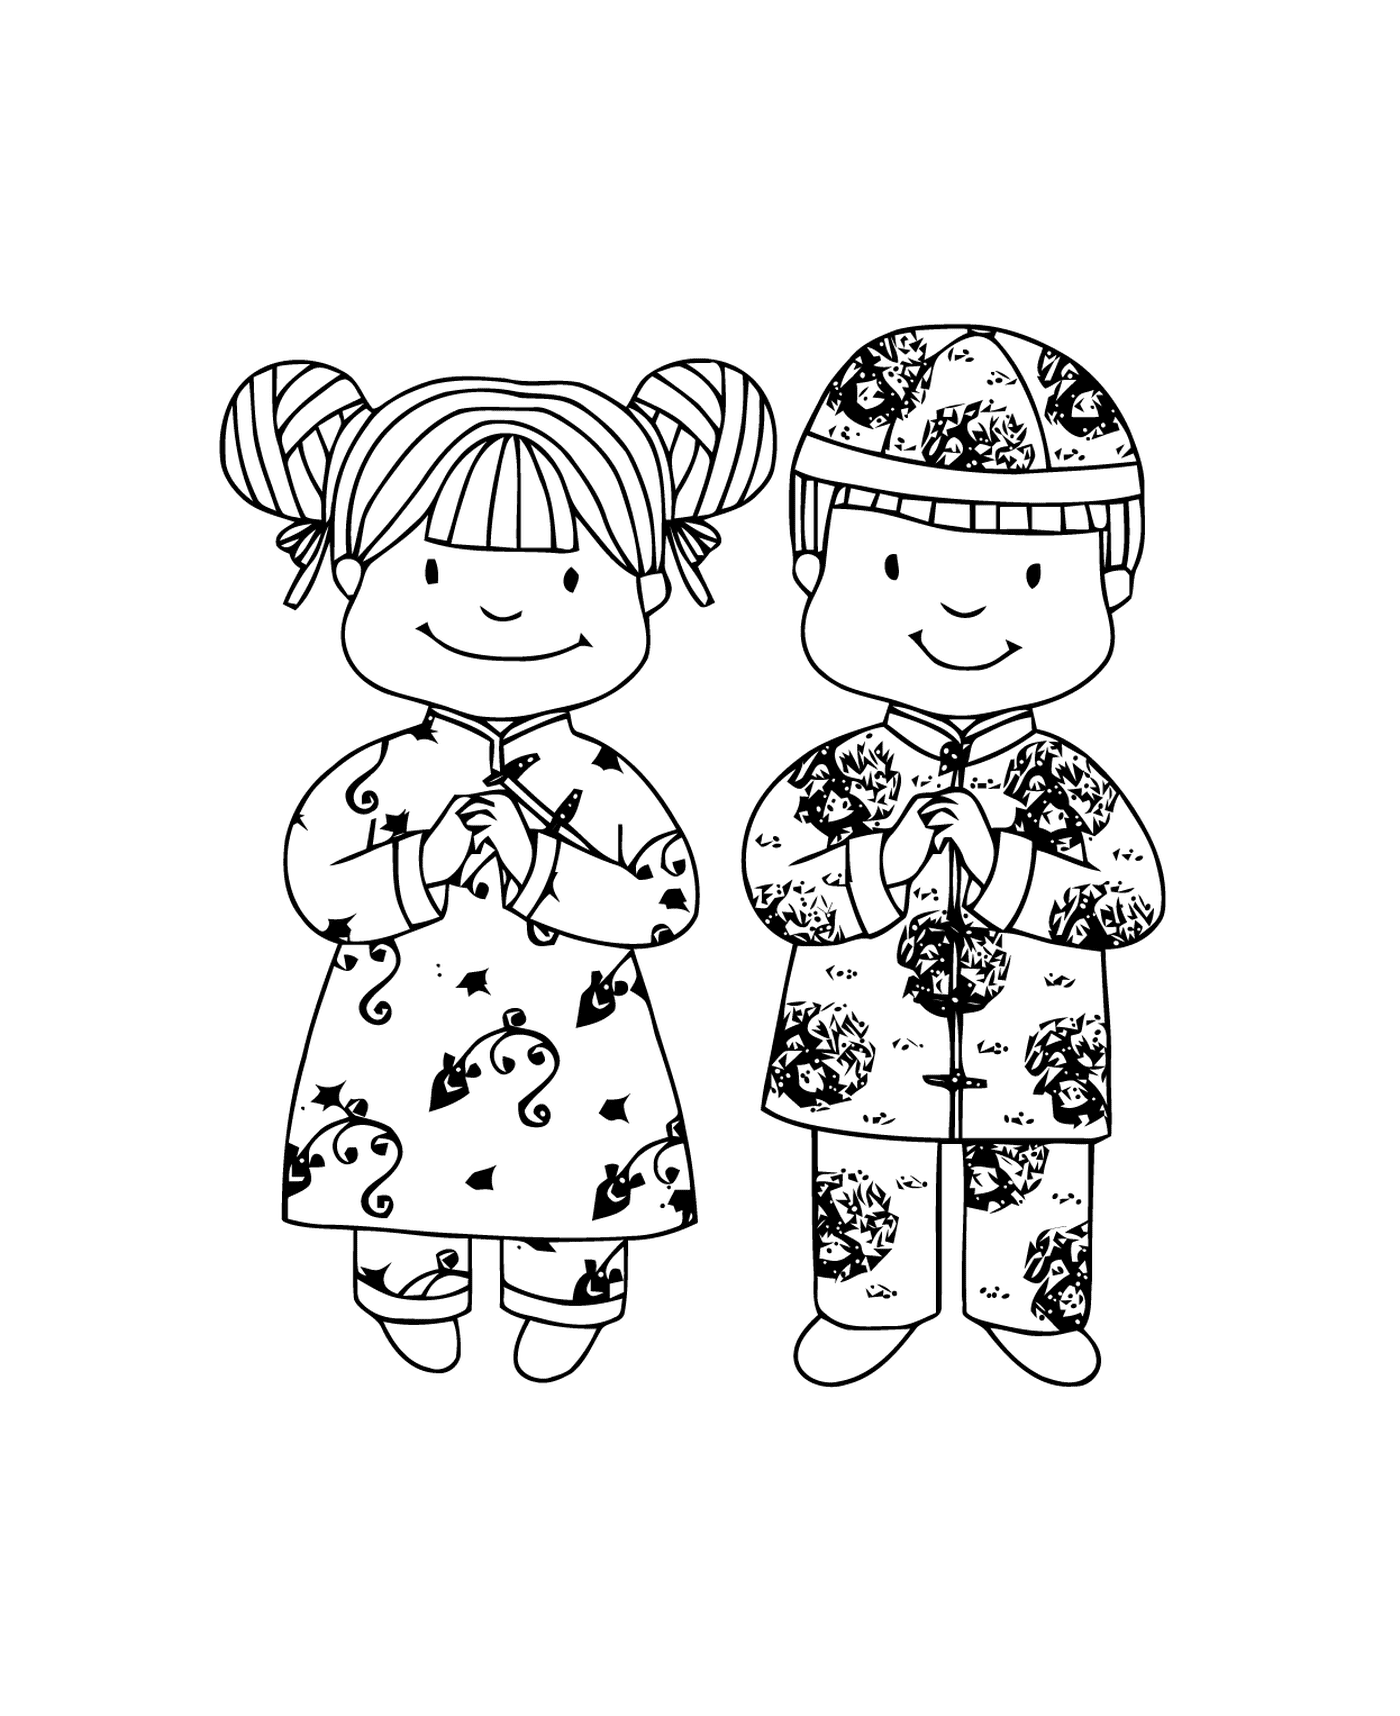  中华新年穿传统服装的女孩和男孩 